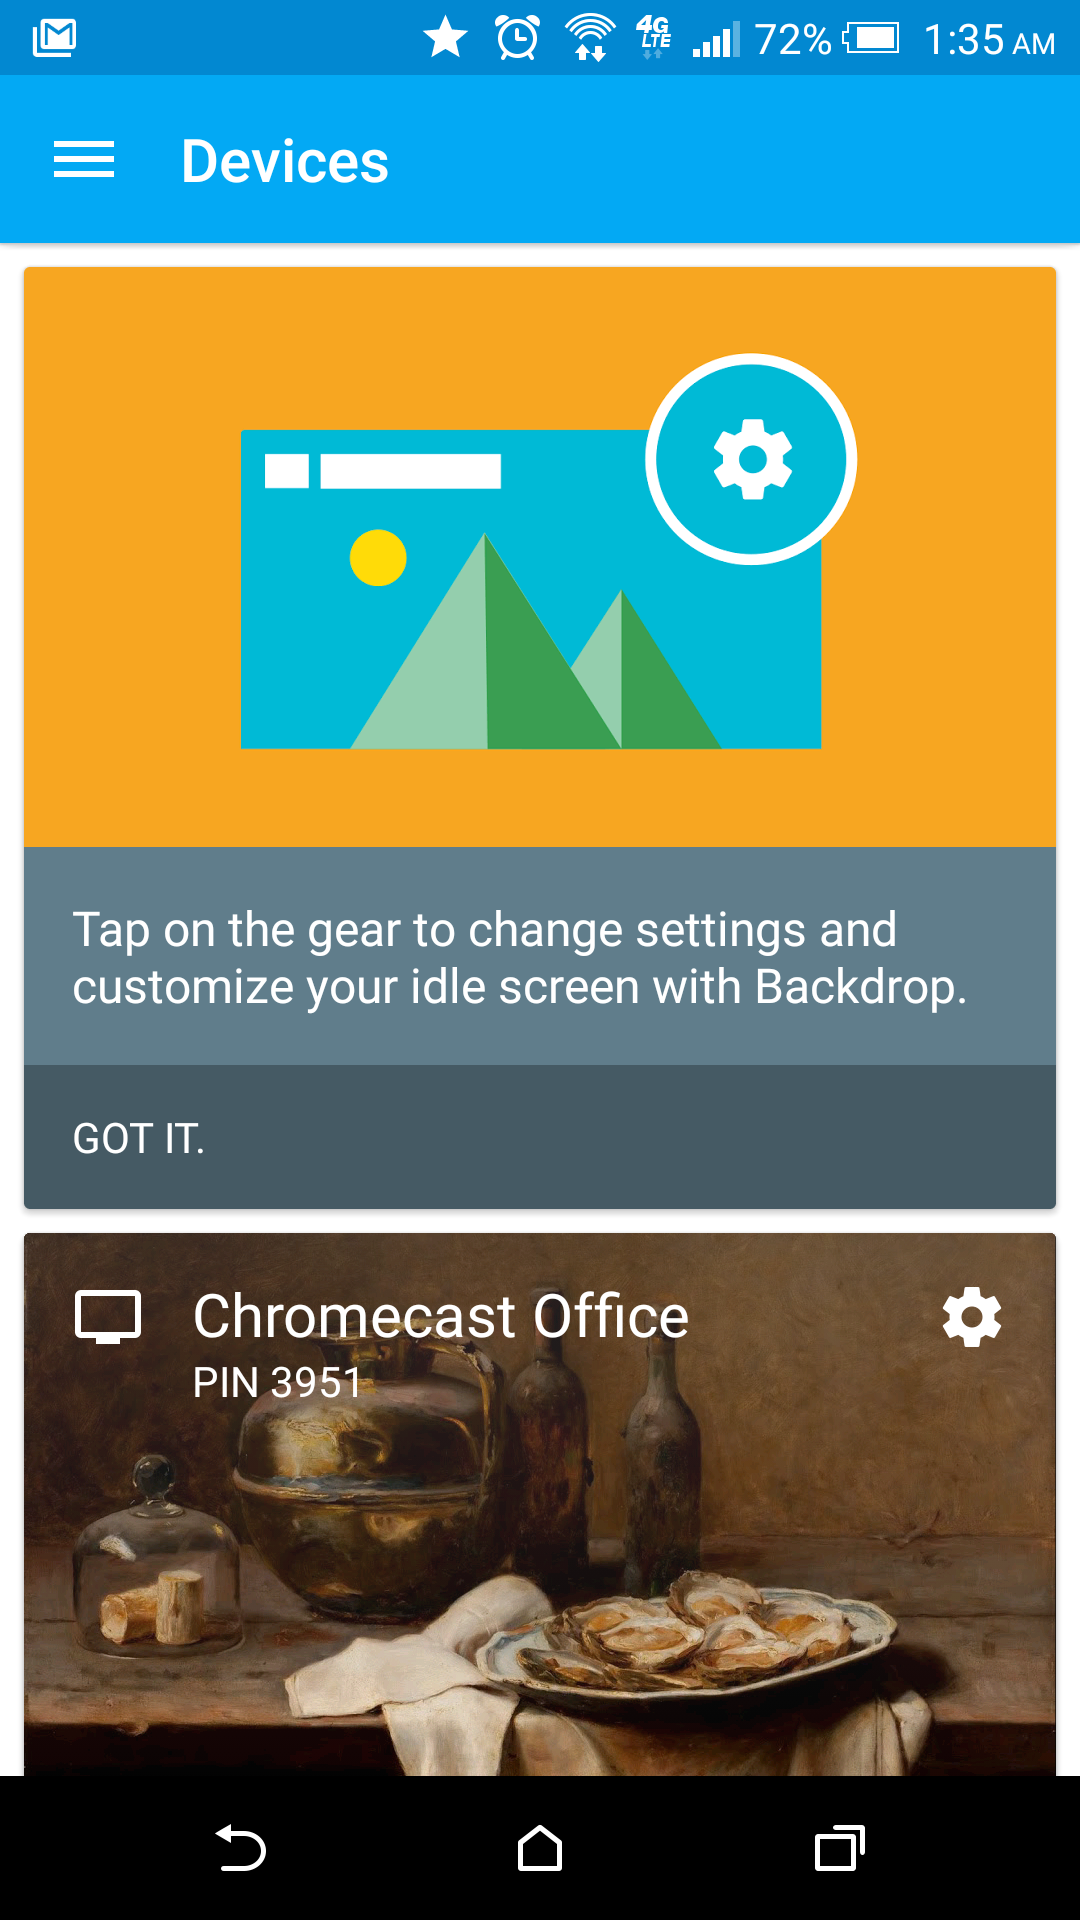 google chromecast app for macbook air